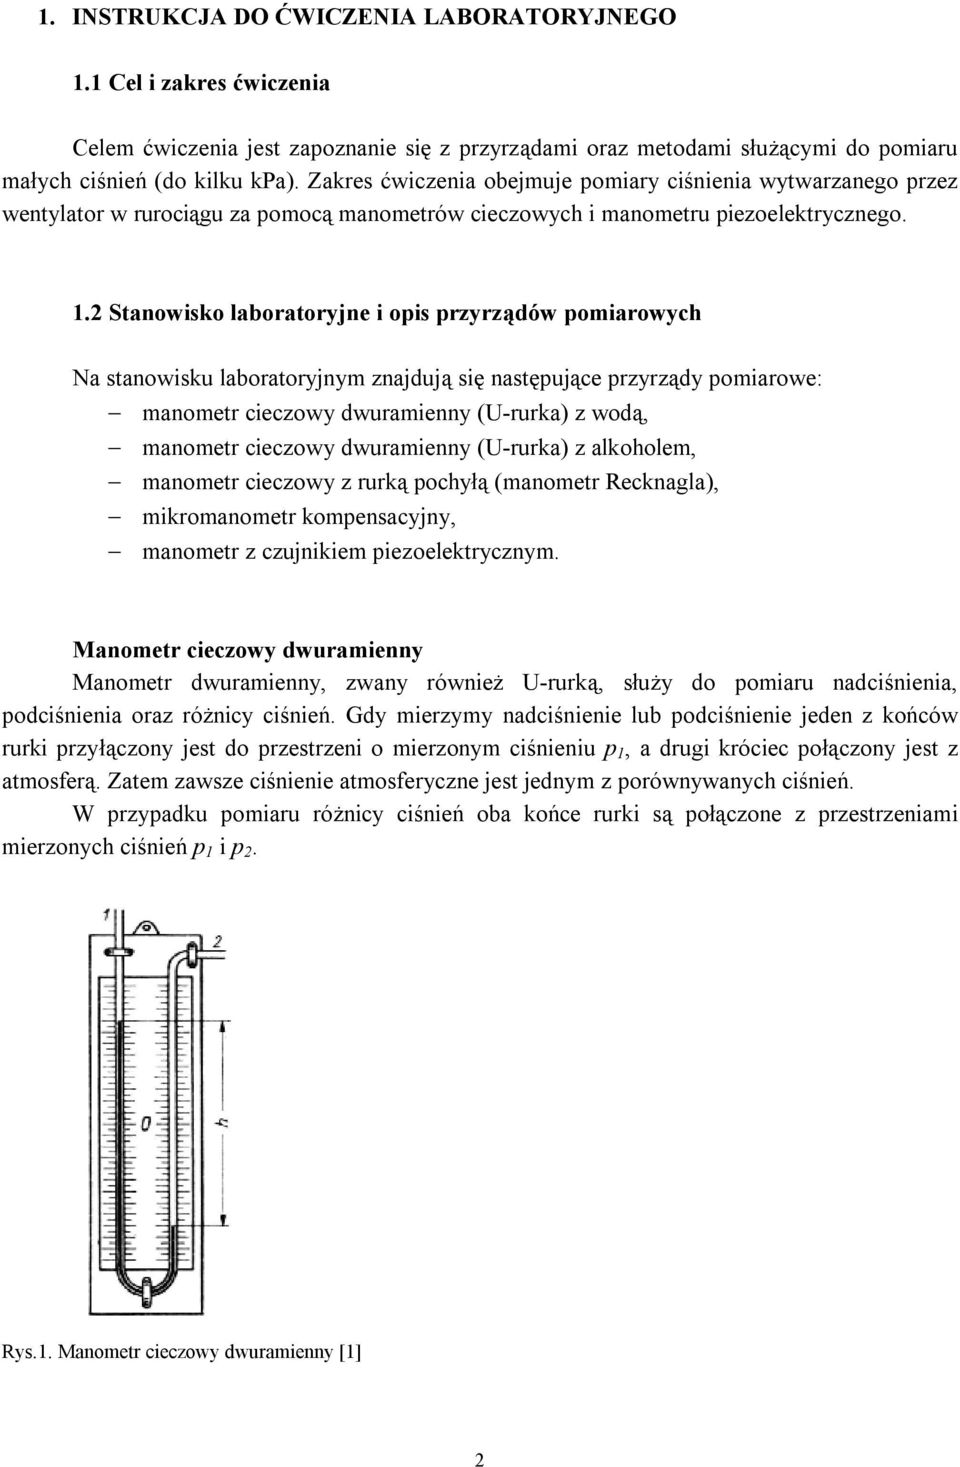 2 Stanowisko laboratoryjne i opis przyrządów pomiarowych Na stanowisku laboratoryjnym znajdują się następujące przyrządy pomiarowe: manometr cieczowy dwuramienny (U-rurka) z wodą, manometr cieczowy